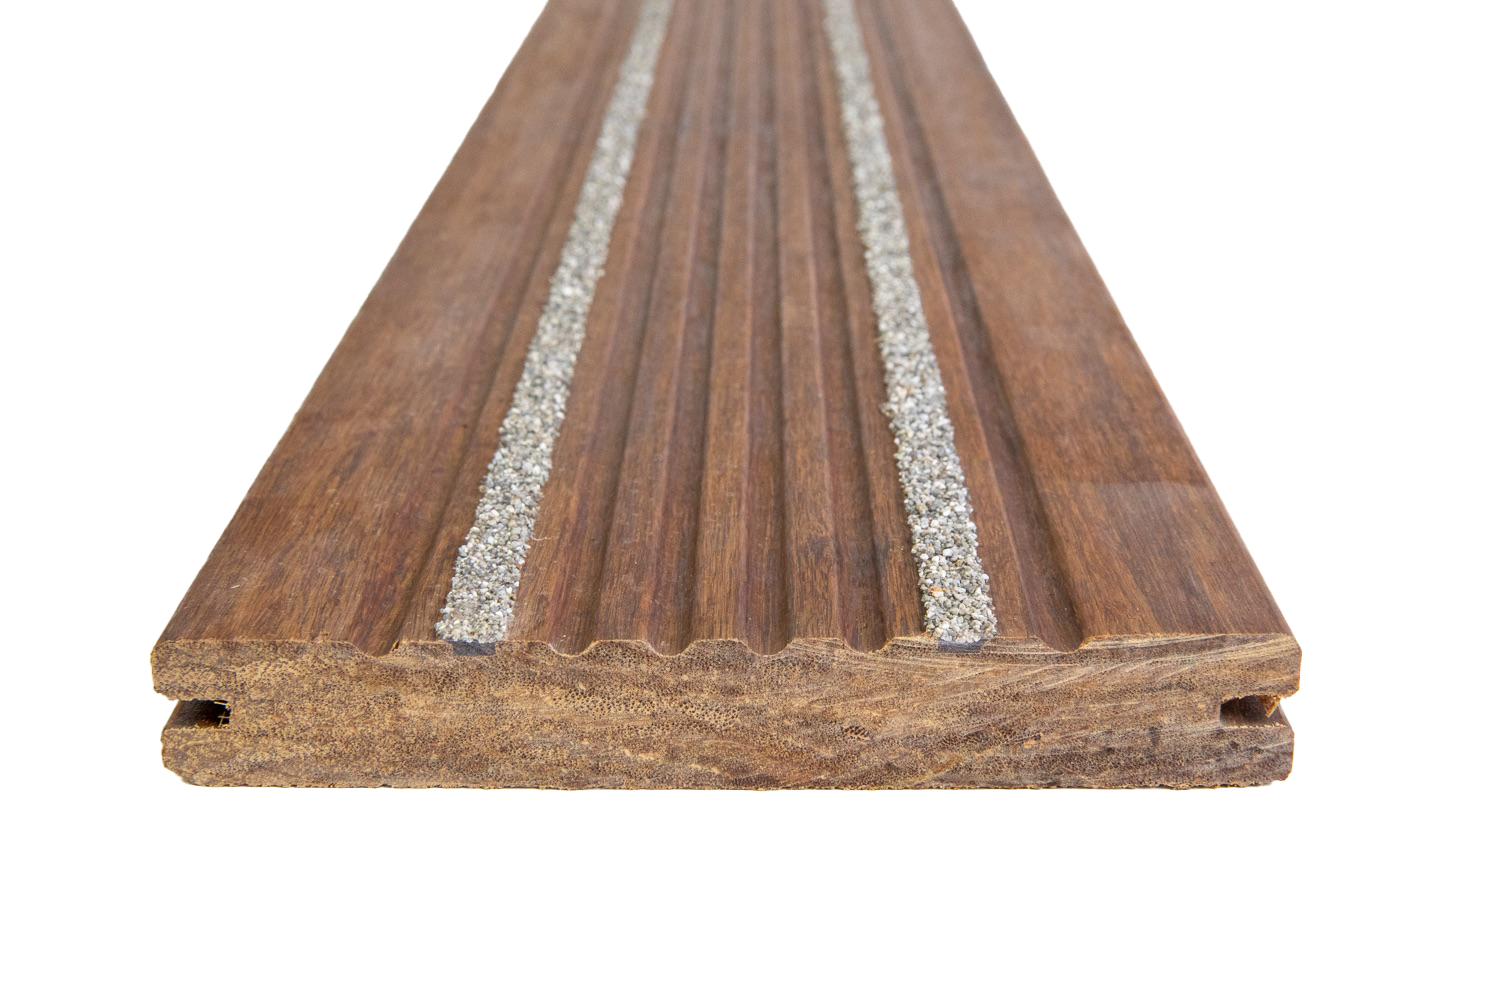 Gripsure Bamboo Non-Slip Deck Board